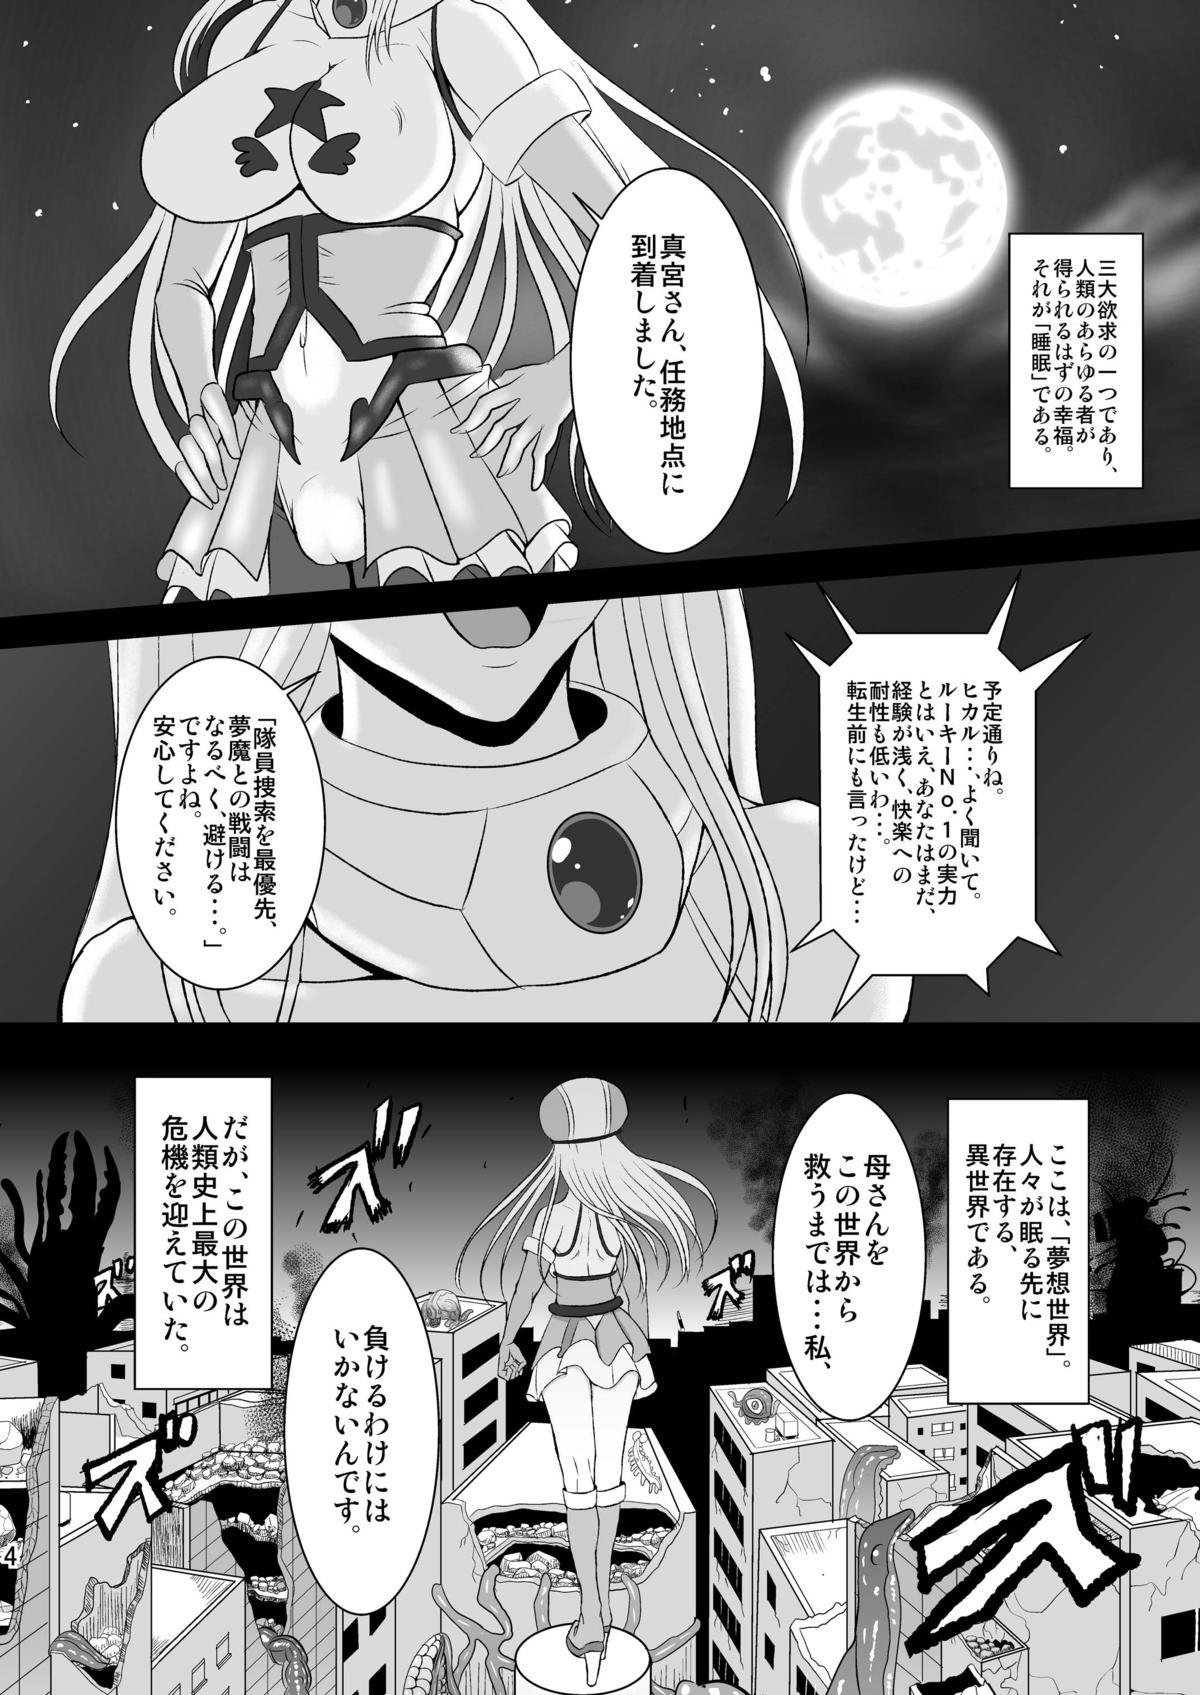 Spanking Musou Tensei Stella Knight Innocent - Page 4